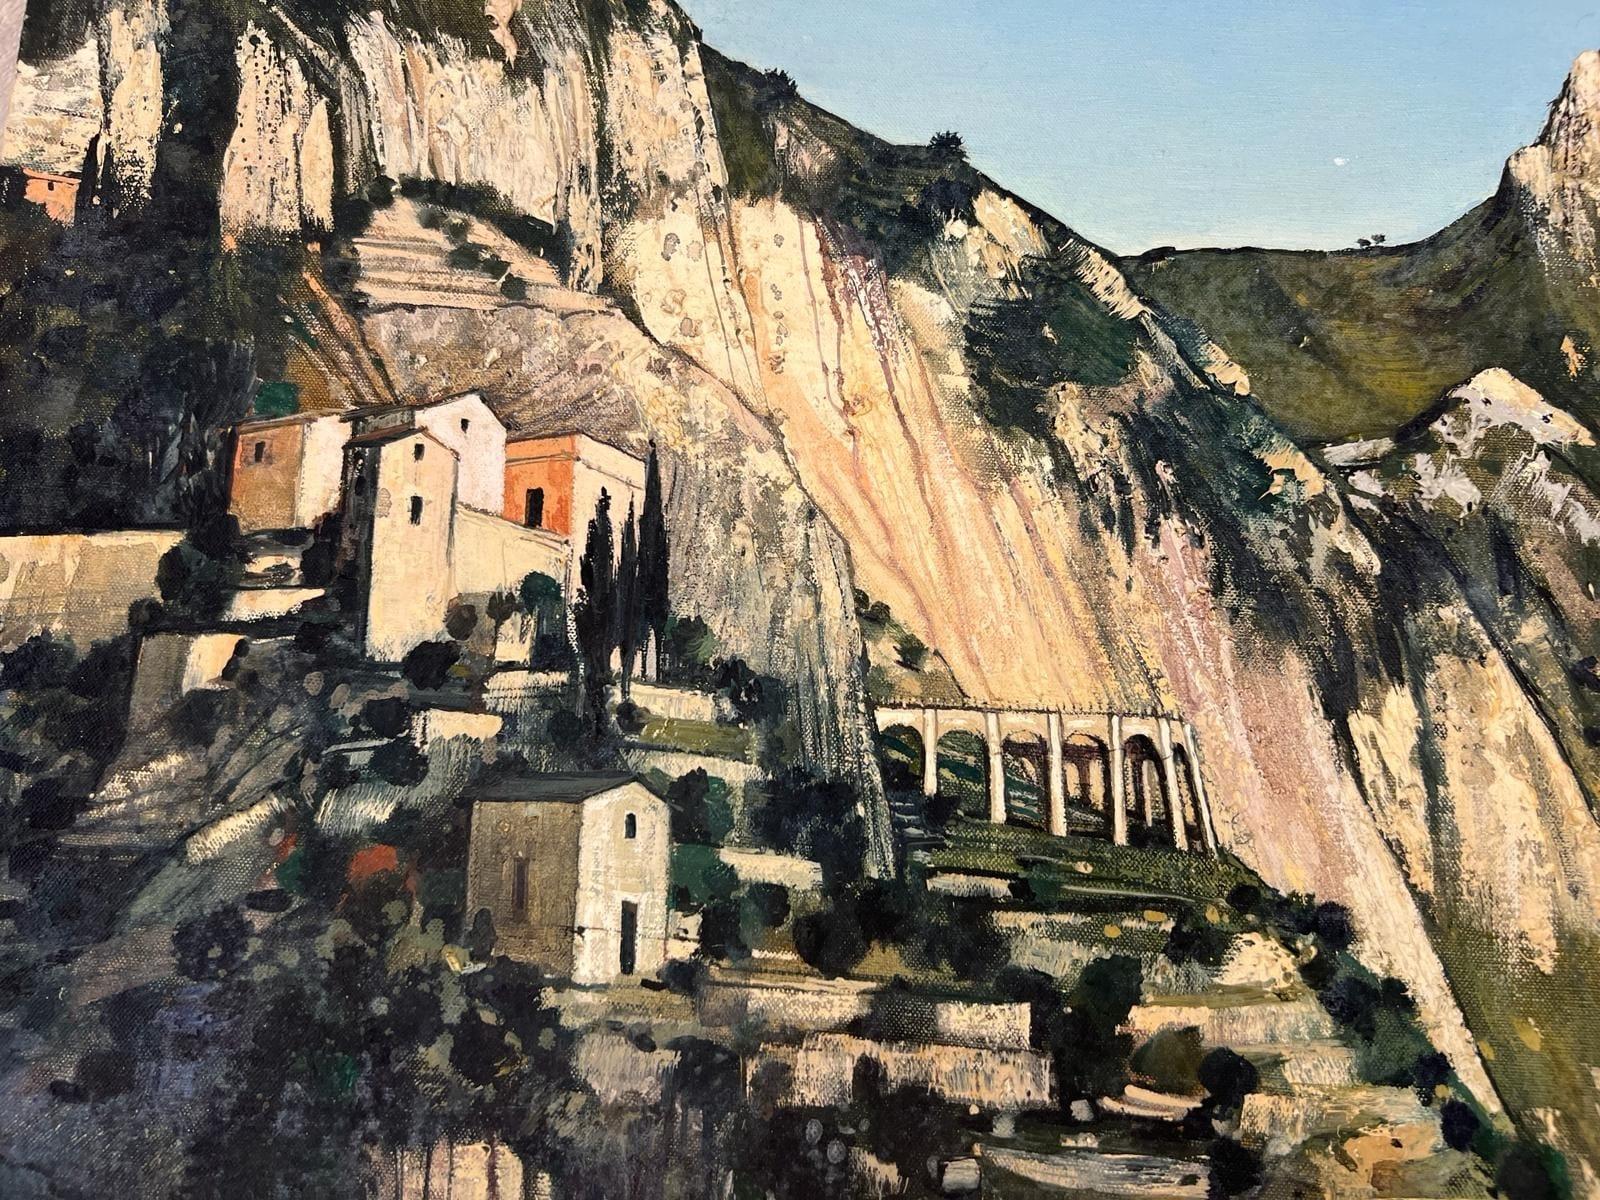 Formé à l'Académie des Fine Art de Lyon, Jean Thomas expose ses œuvres dès 1946. Dans la lignée des grands peintres de la modernité, ses premiers tableaux font écho aux plus grandes influences de Thomas, à savoir Fernand Léger et Matisse. Certains